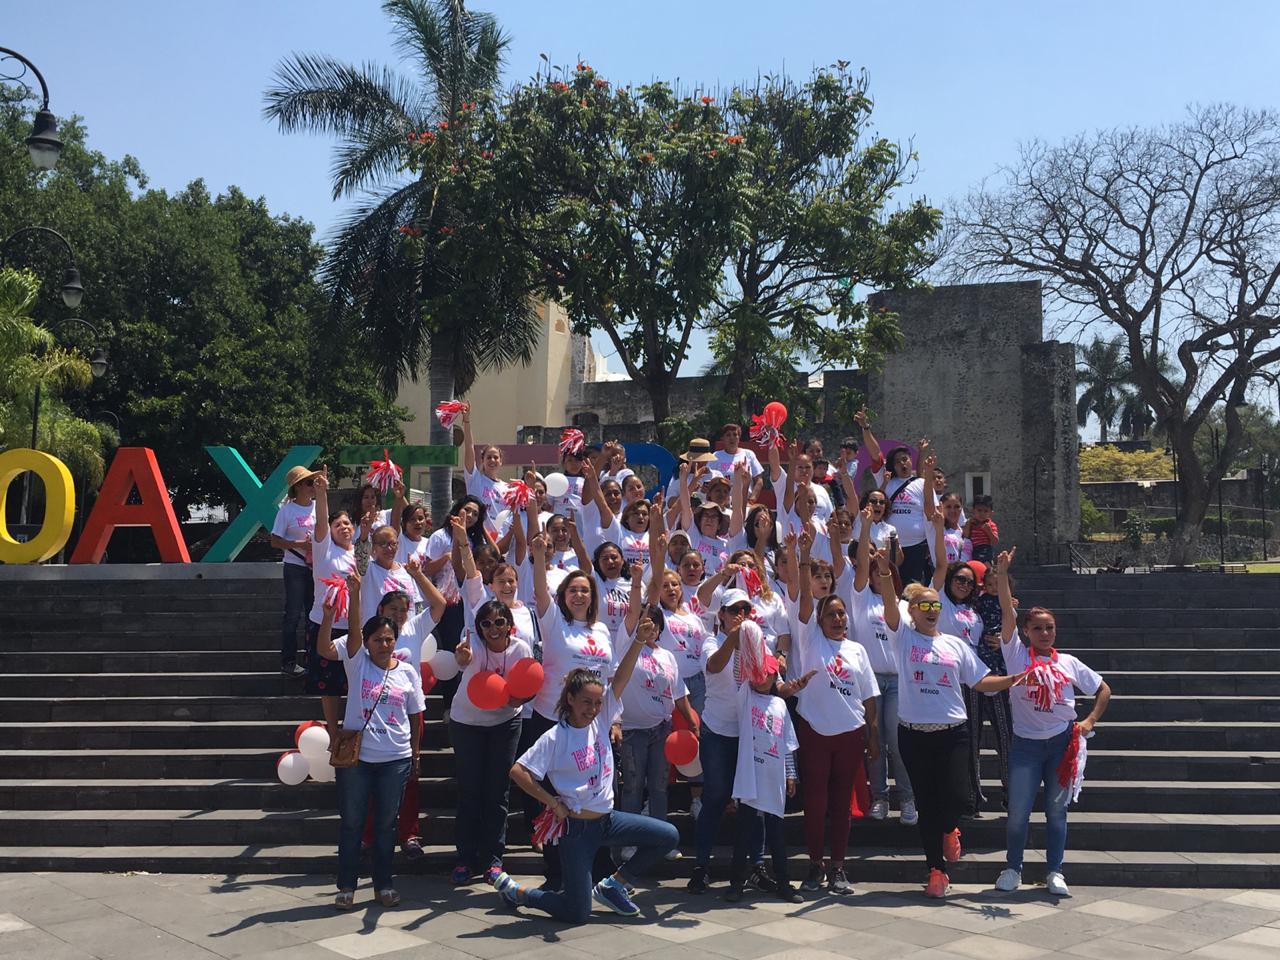 La Comisión Unidos Vs. Trata participó en una jornada de prevención de la violencia y la trata de personas, que culminó con el baile 1 Billón de Pie, en Oaxtepec, Morelos.